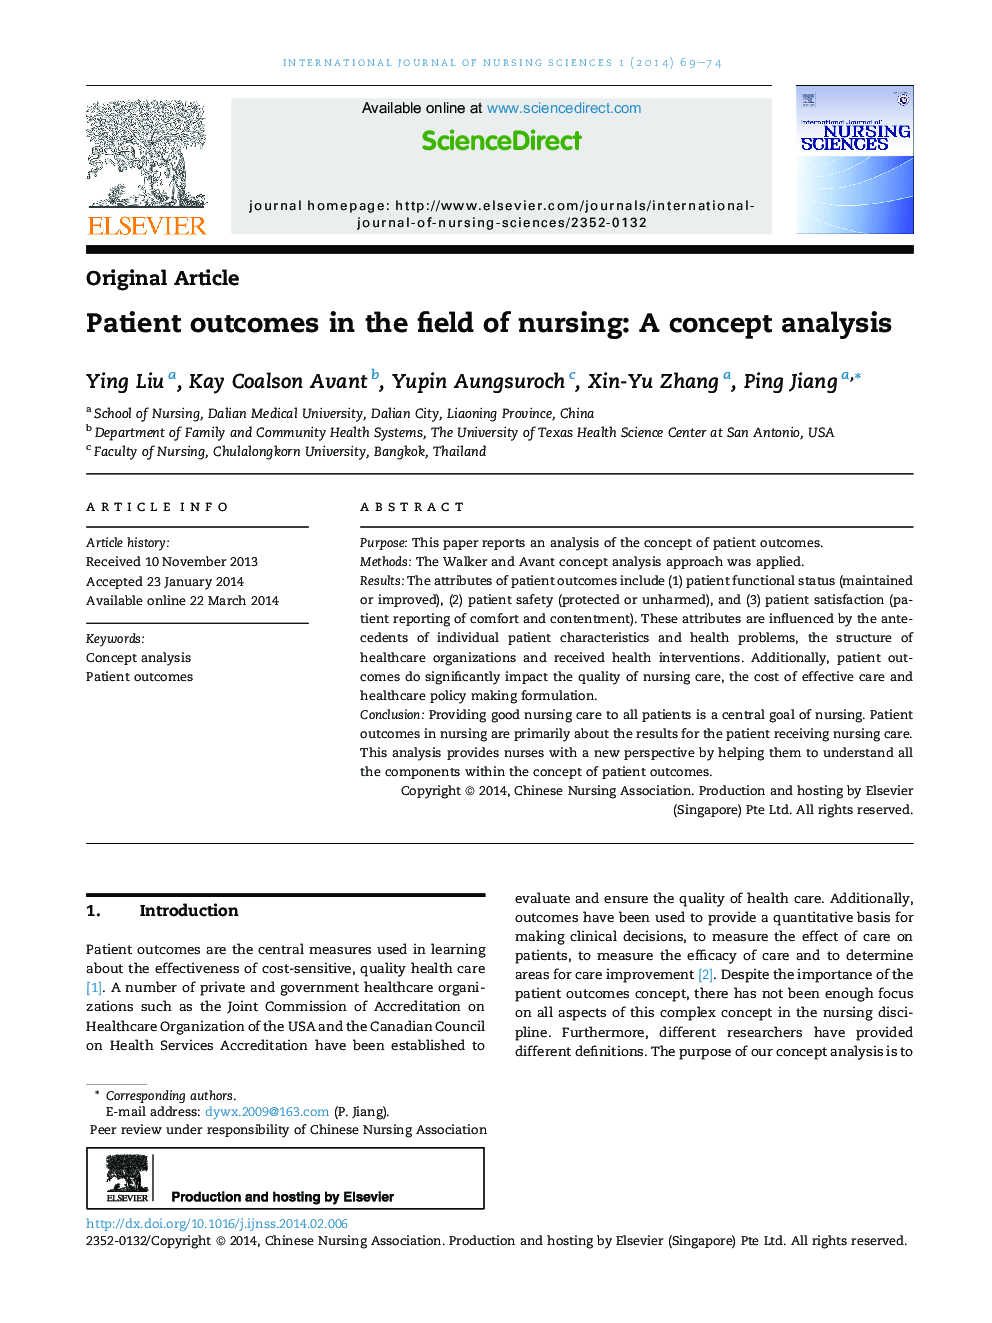 نتایج بیماران در زمینه پرستاری: یک مفهوم تجزیه و تحلیل